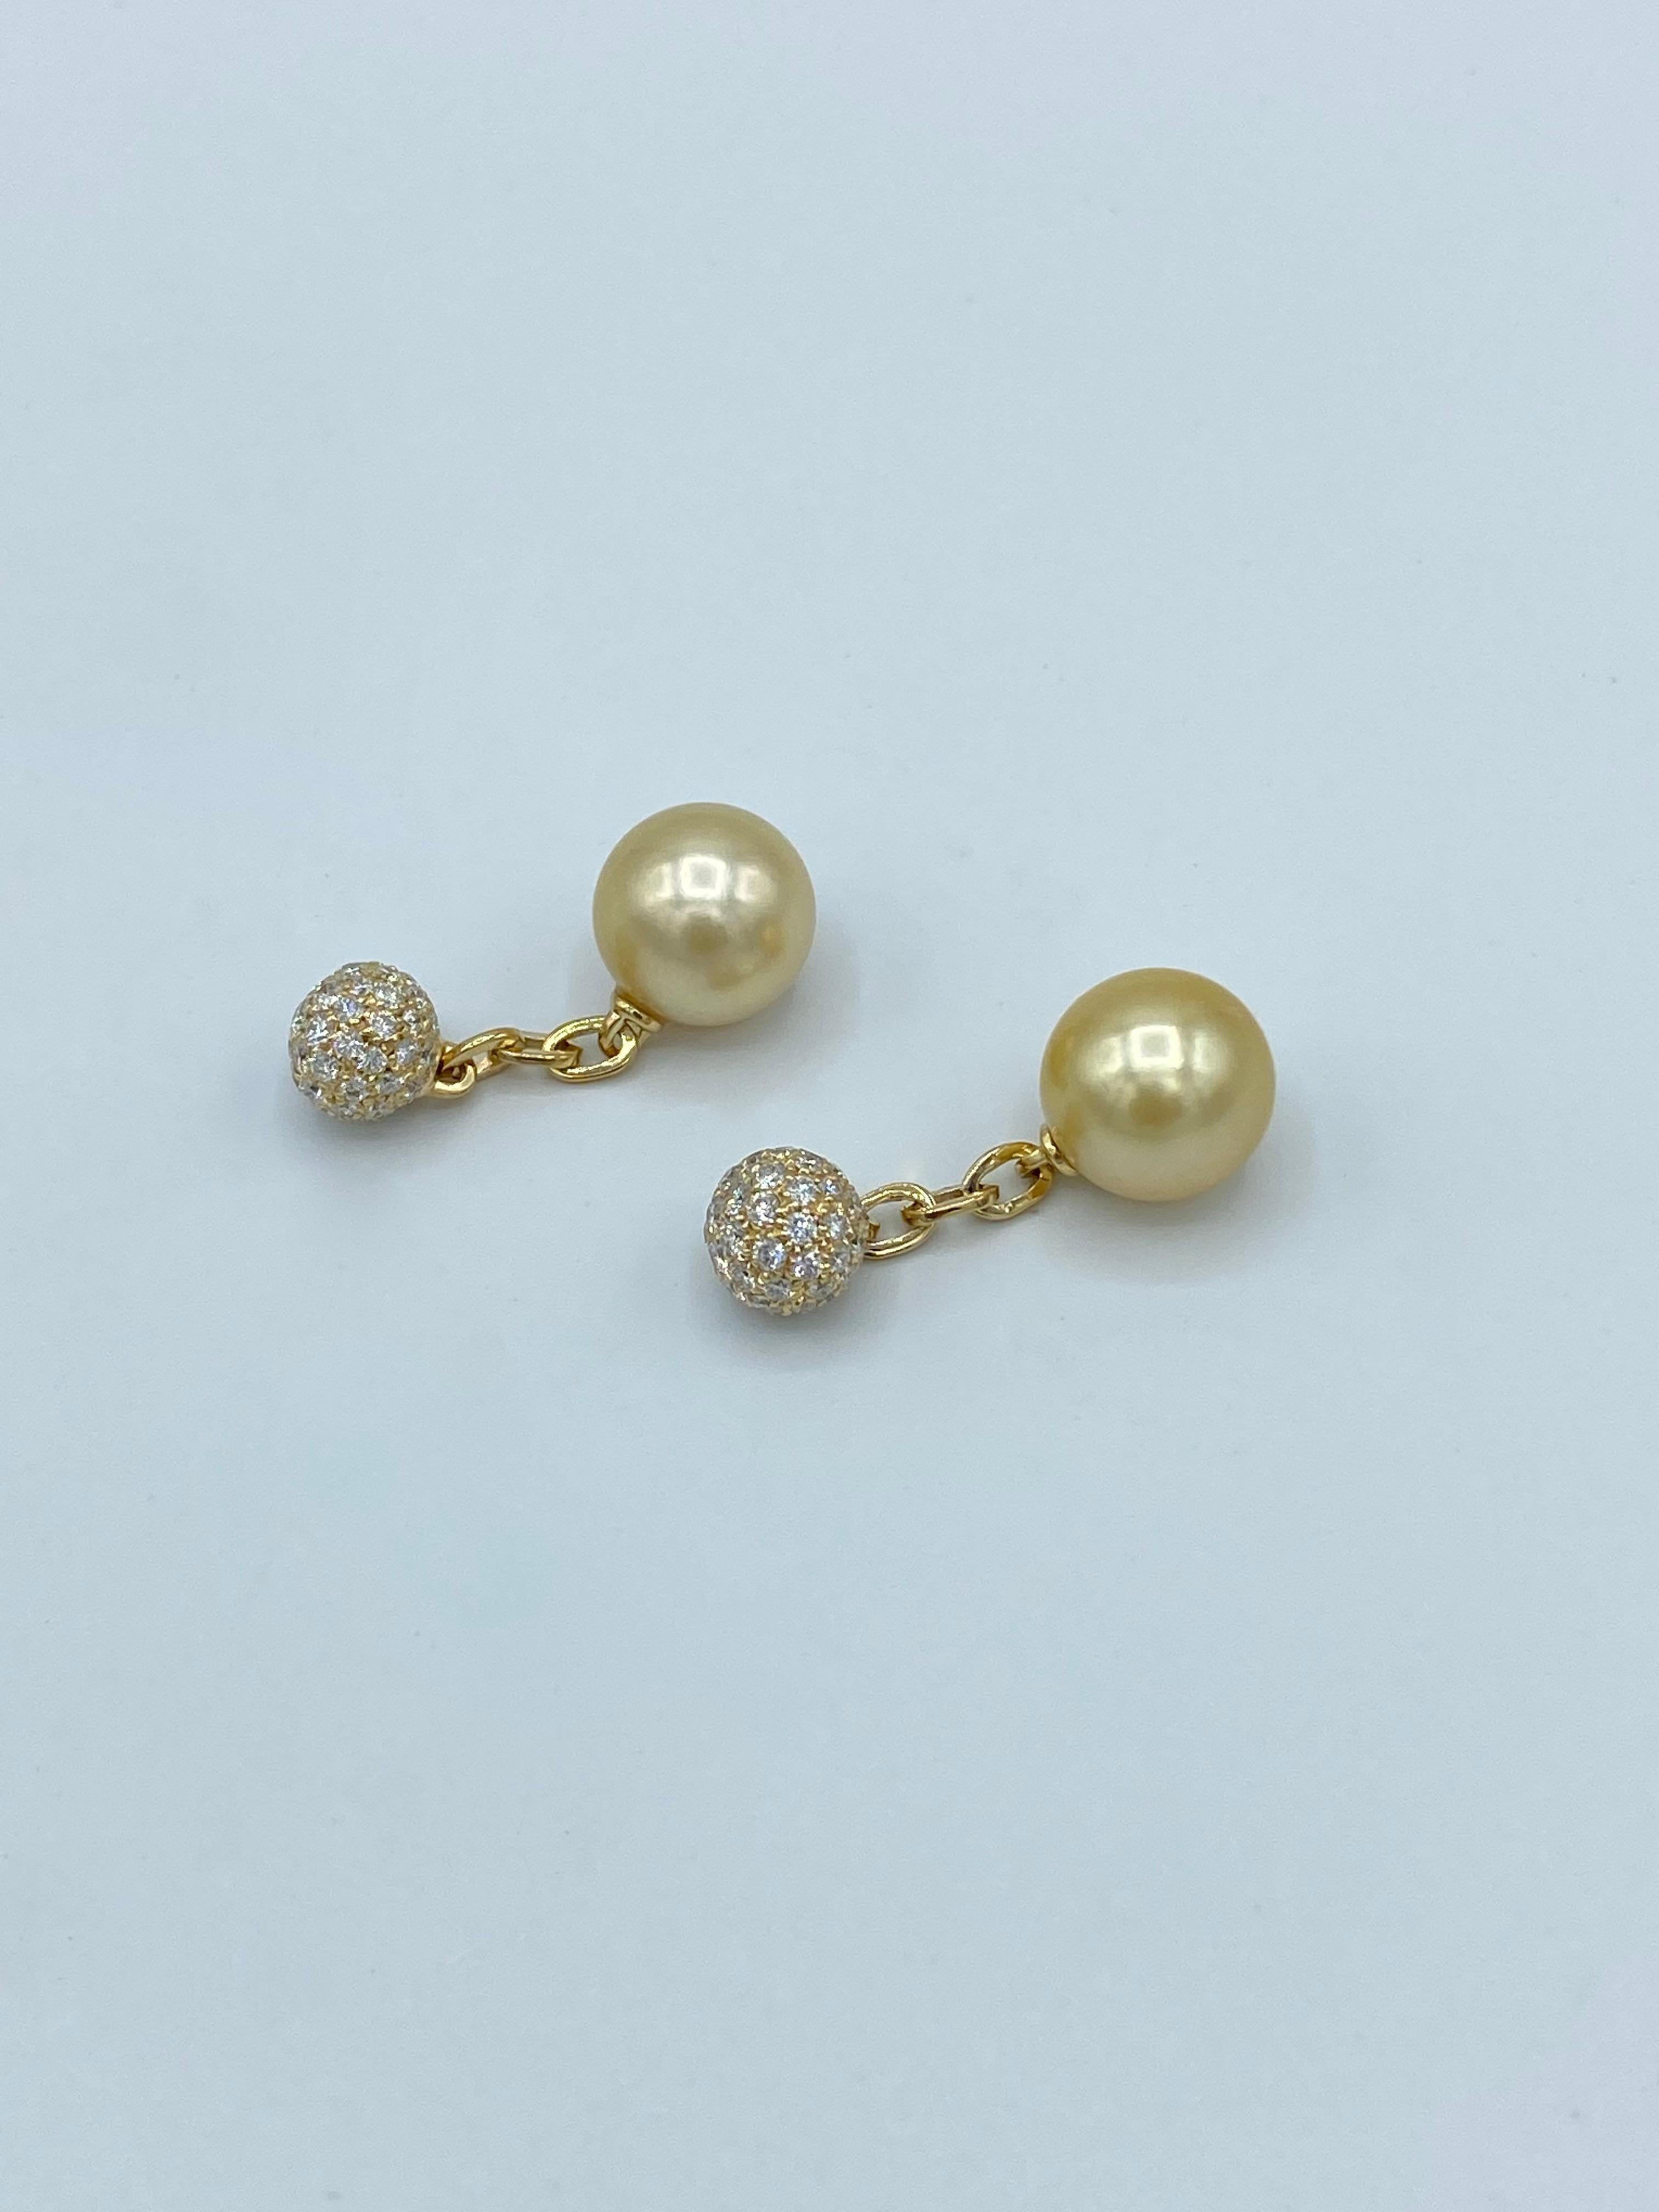 Raffiniertes und elegantes Paar Manschettenknöpfe aus 18 Karat Gold.
Australische Goldperlen haben eine sehr schöne seidige Farbe und sind unmarkiert.
Jedes Stück besteht aus einer australischen Perle von ca. 11 mm Durchmesser, die durch eine